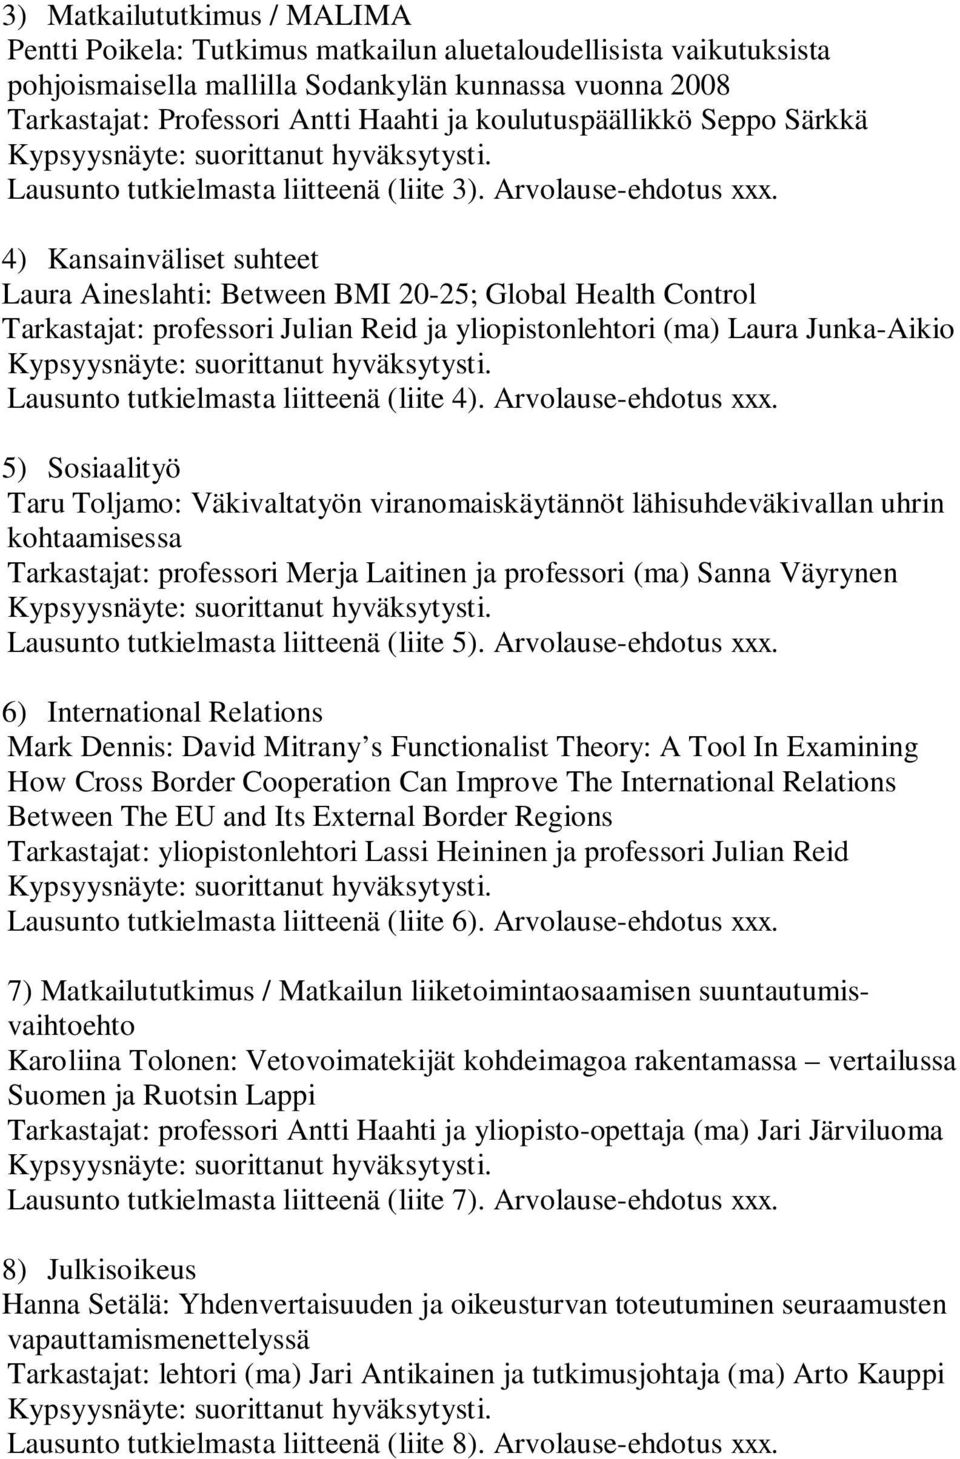 4) Kansainväliset suhteet Laura Aineslahti: Between BMI 20-25; Global Health Control Tarkastajat: professori Julian Reid ja yliopistonlehtori (ma) Laura Junka-Aikio Lausunto tutkielmasta liitteenä